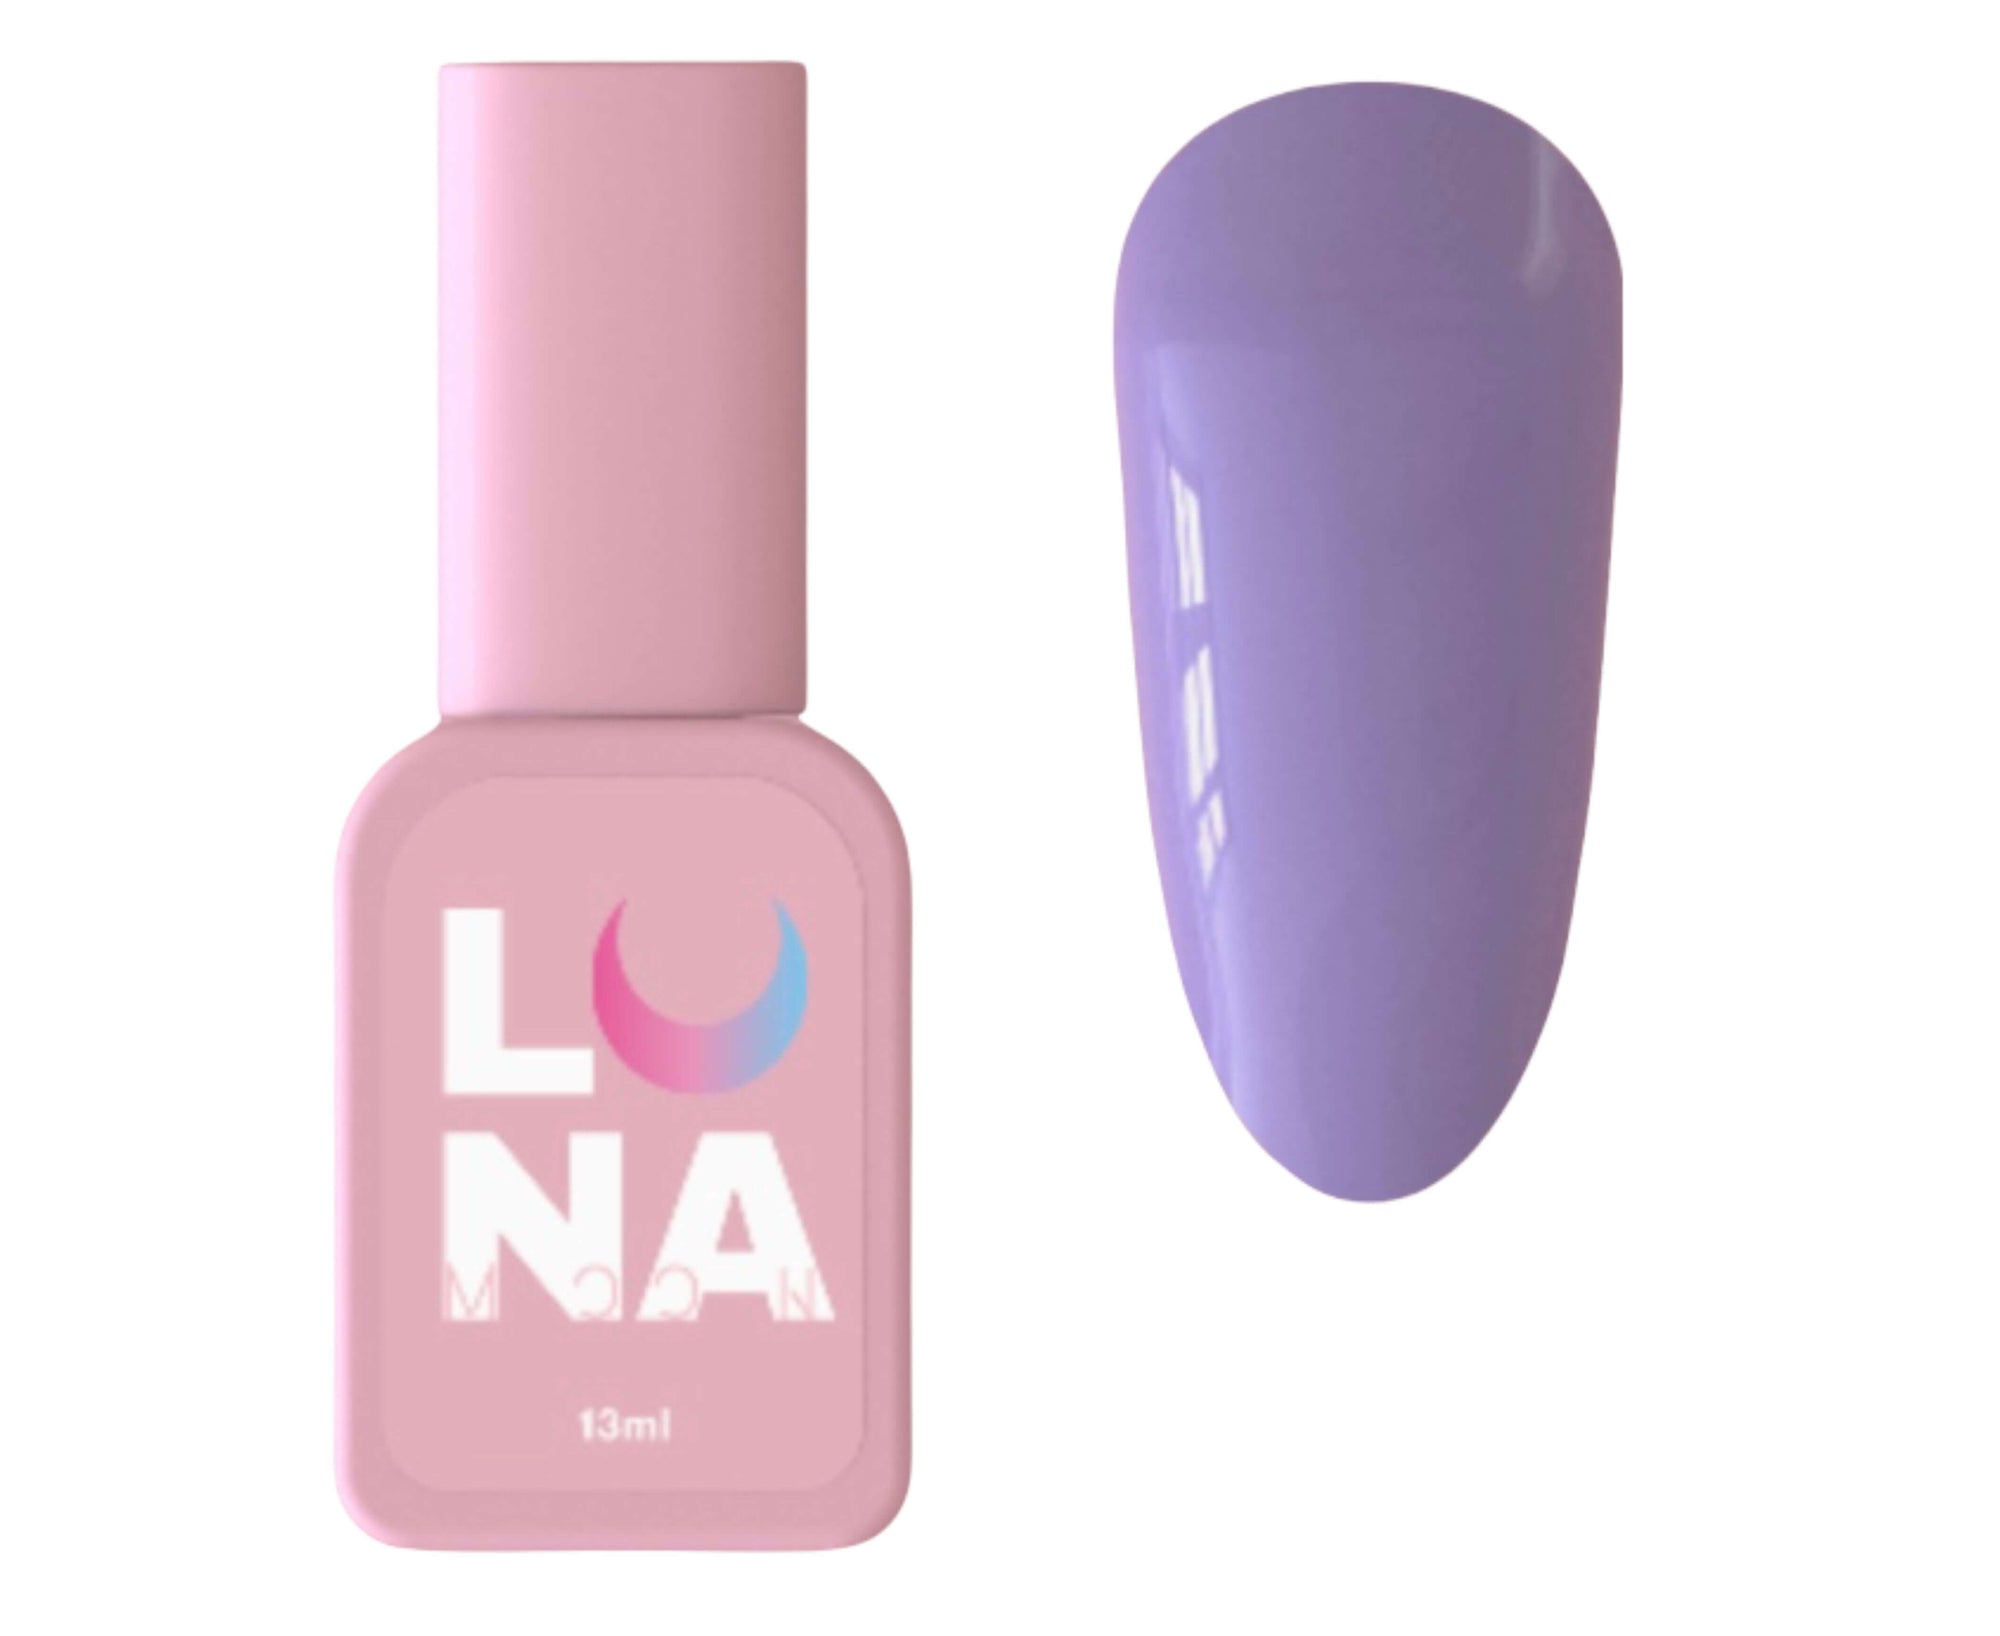 Luna Colored Rubber Base - Light Violet